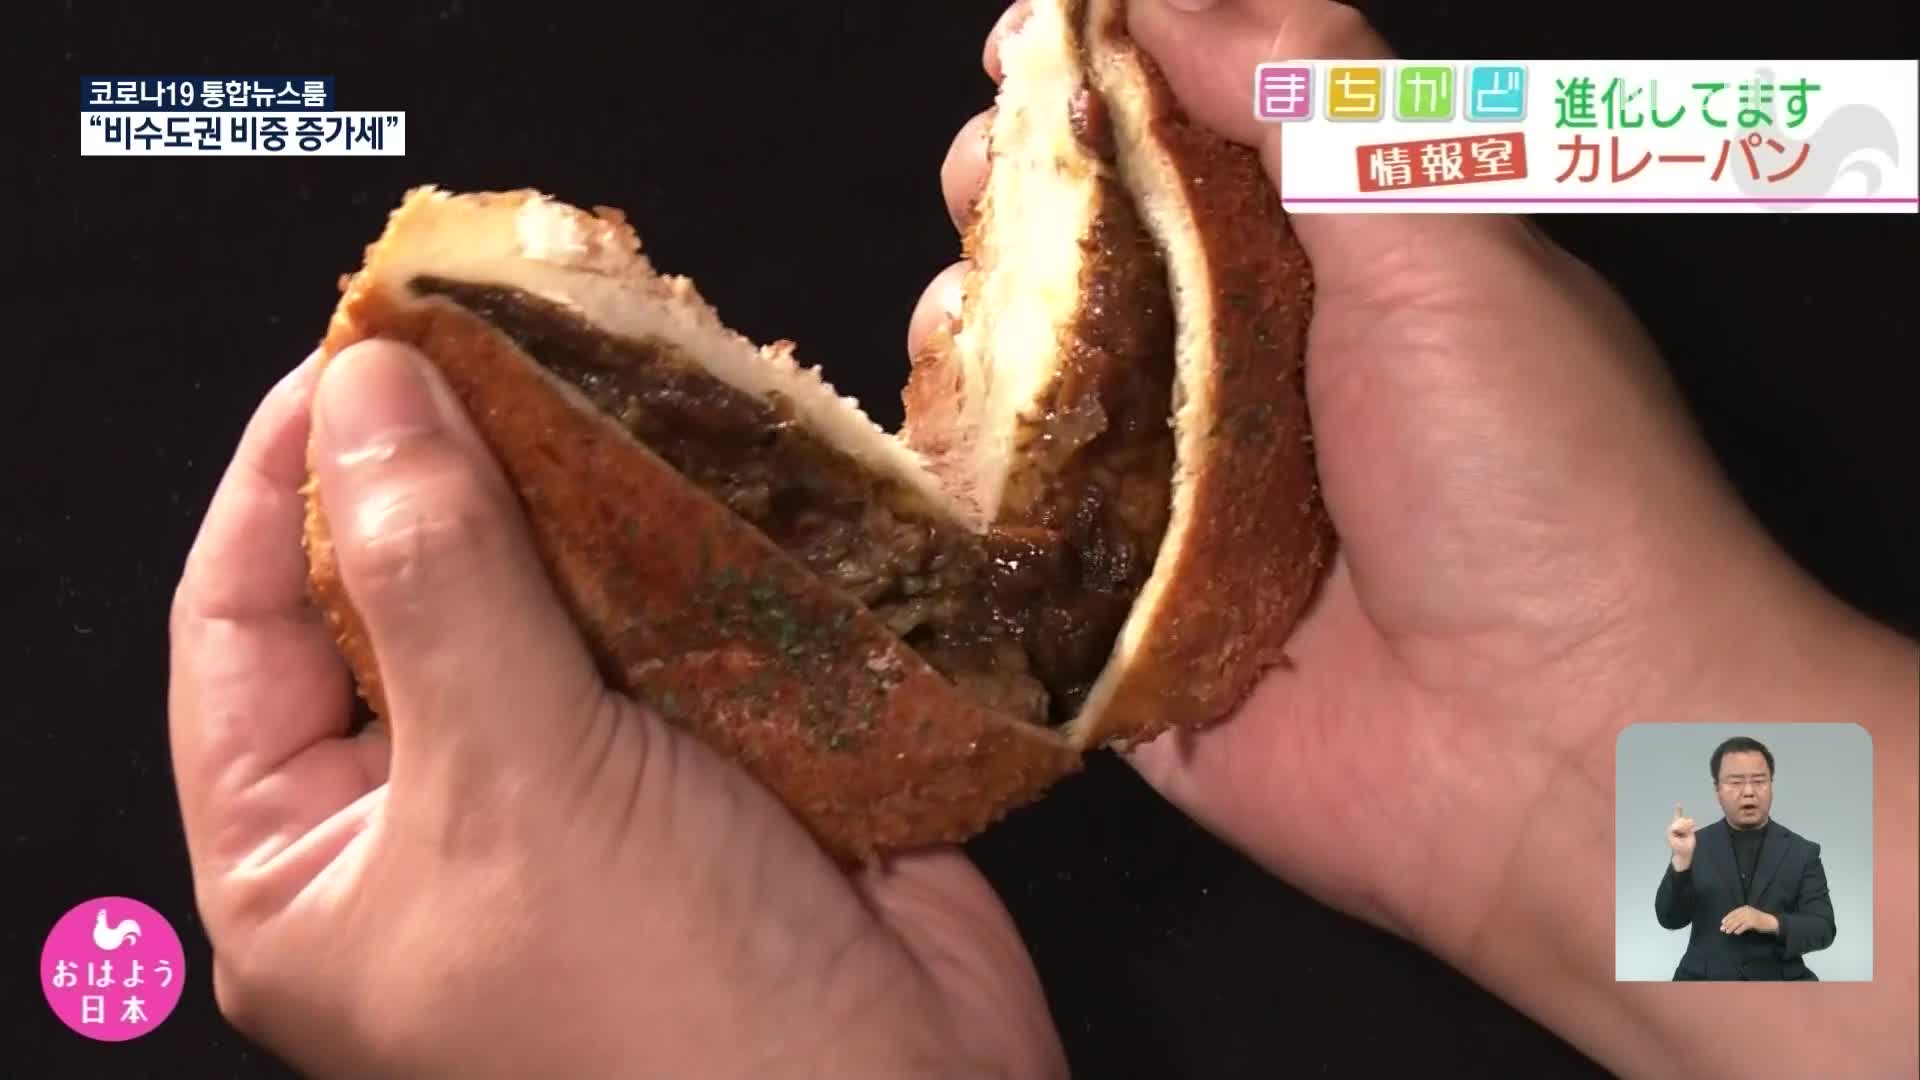 일본, 코로나19 속 식사 대용 카레 빵 인기